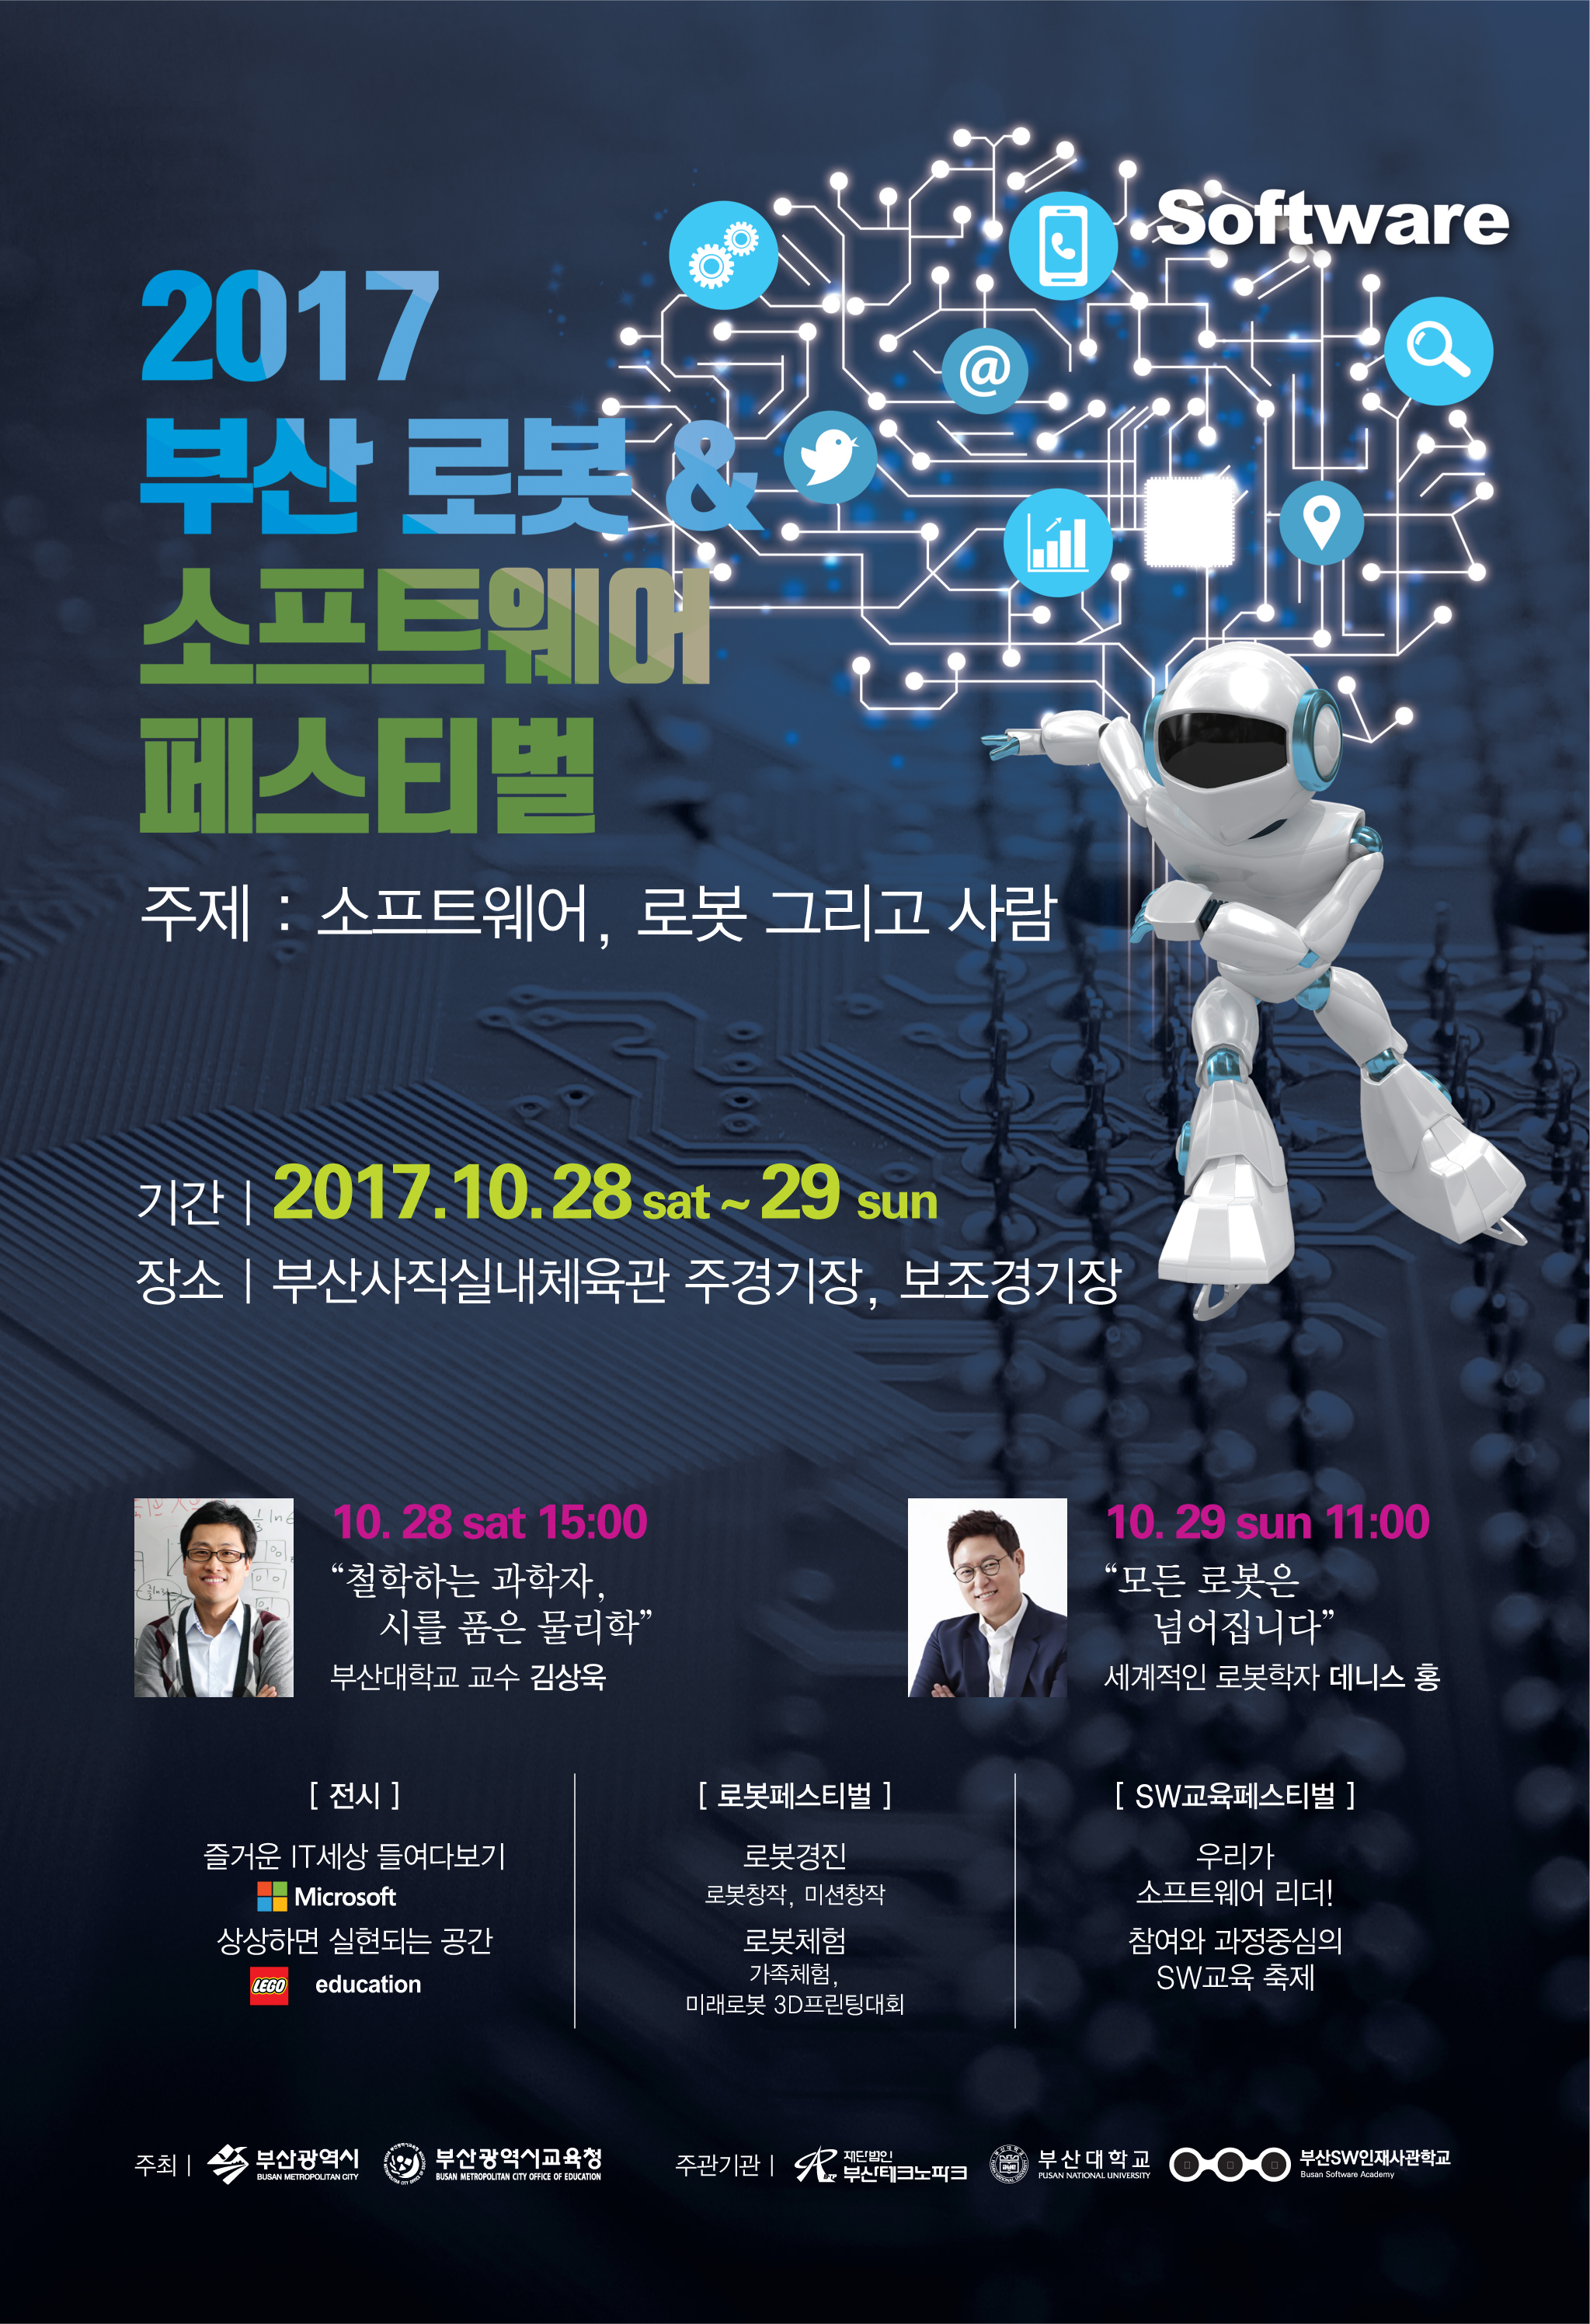 부산 로봇.소프트웨어 페스티벌 행사 개최 안내